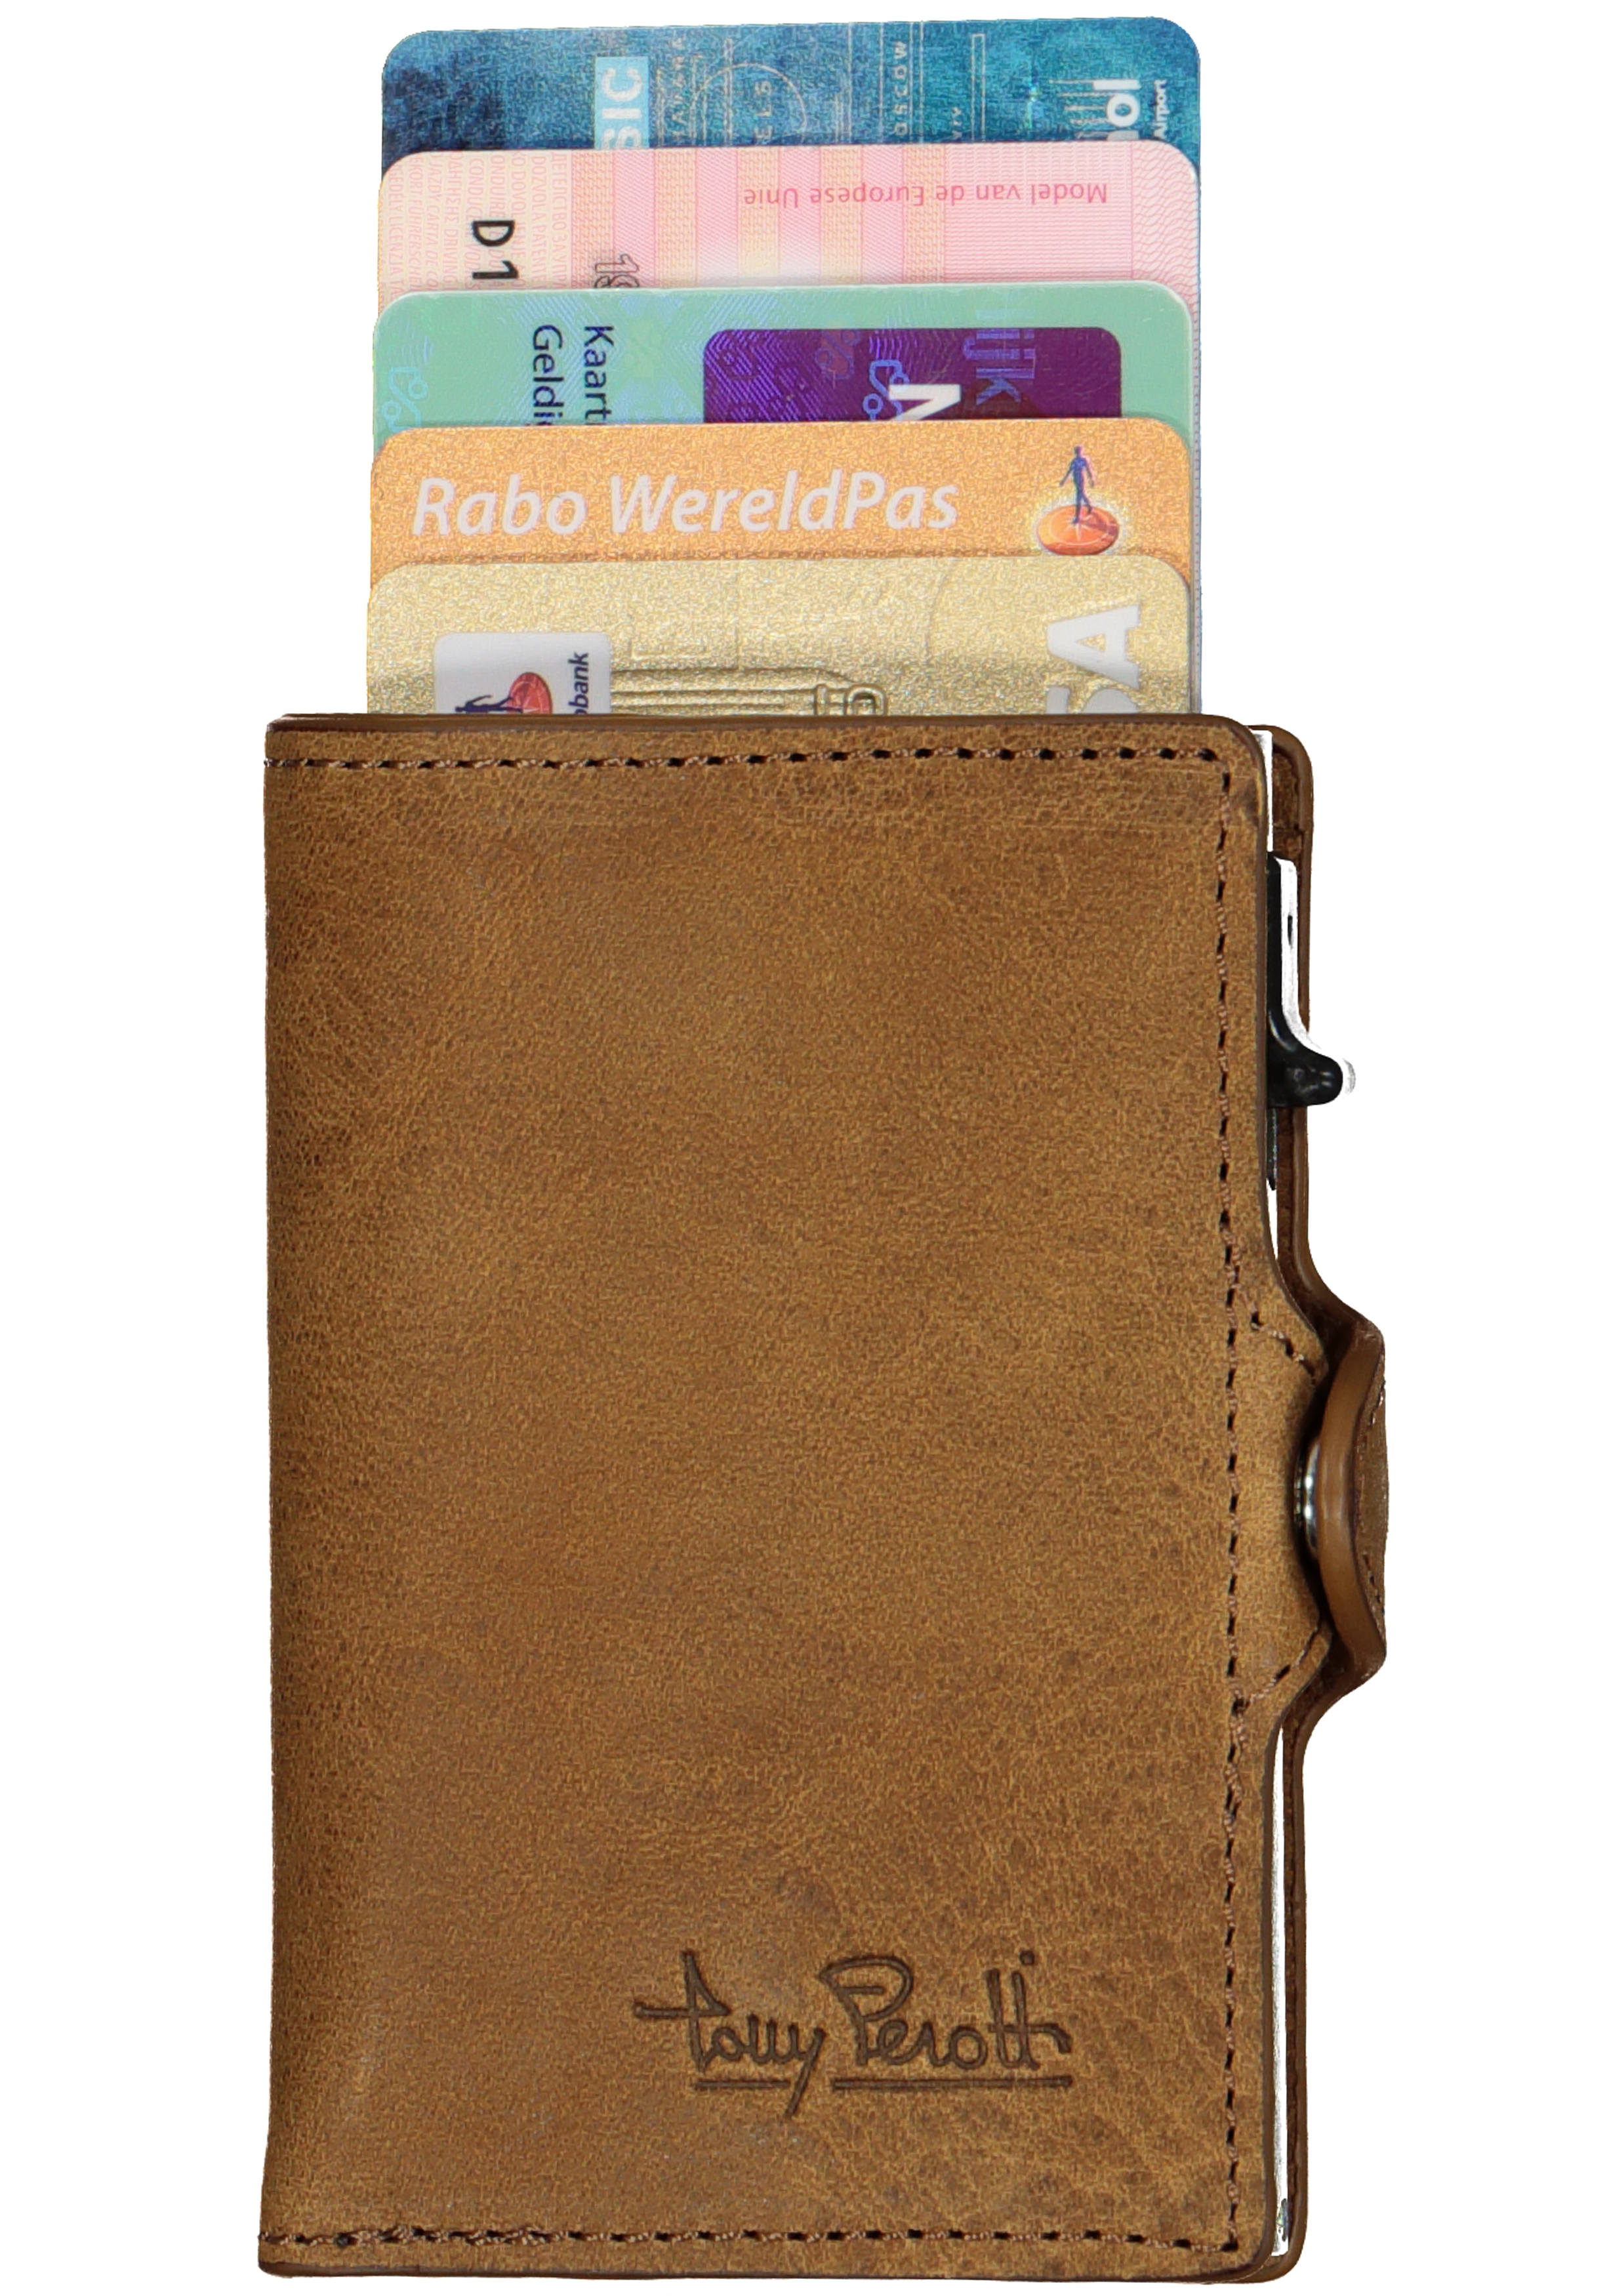 Ellendig veeg Perfect Tony Perotti pasjes RFID portemonnee (6 pasjes) met papiergeldvak, bruin...  - Shop de nieuwste voorjaarsmode